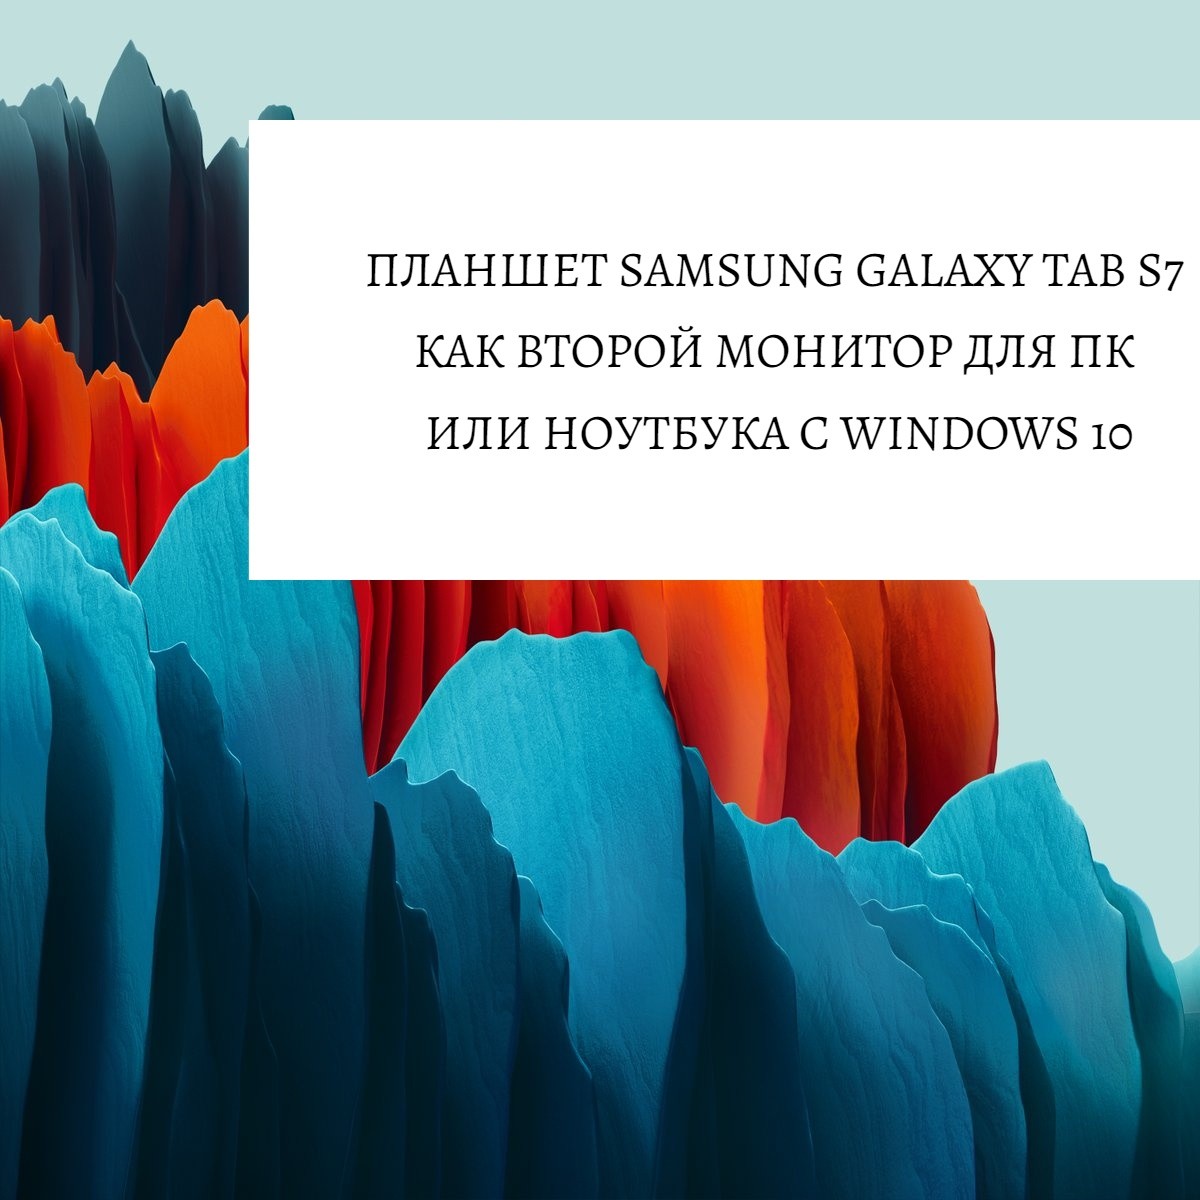 Планшет Samsung Galaxy Tab S7 как второй монитор для ПК или ноутбука с Windows 10